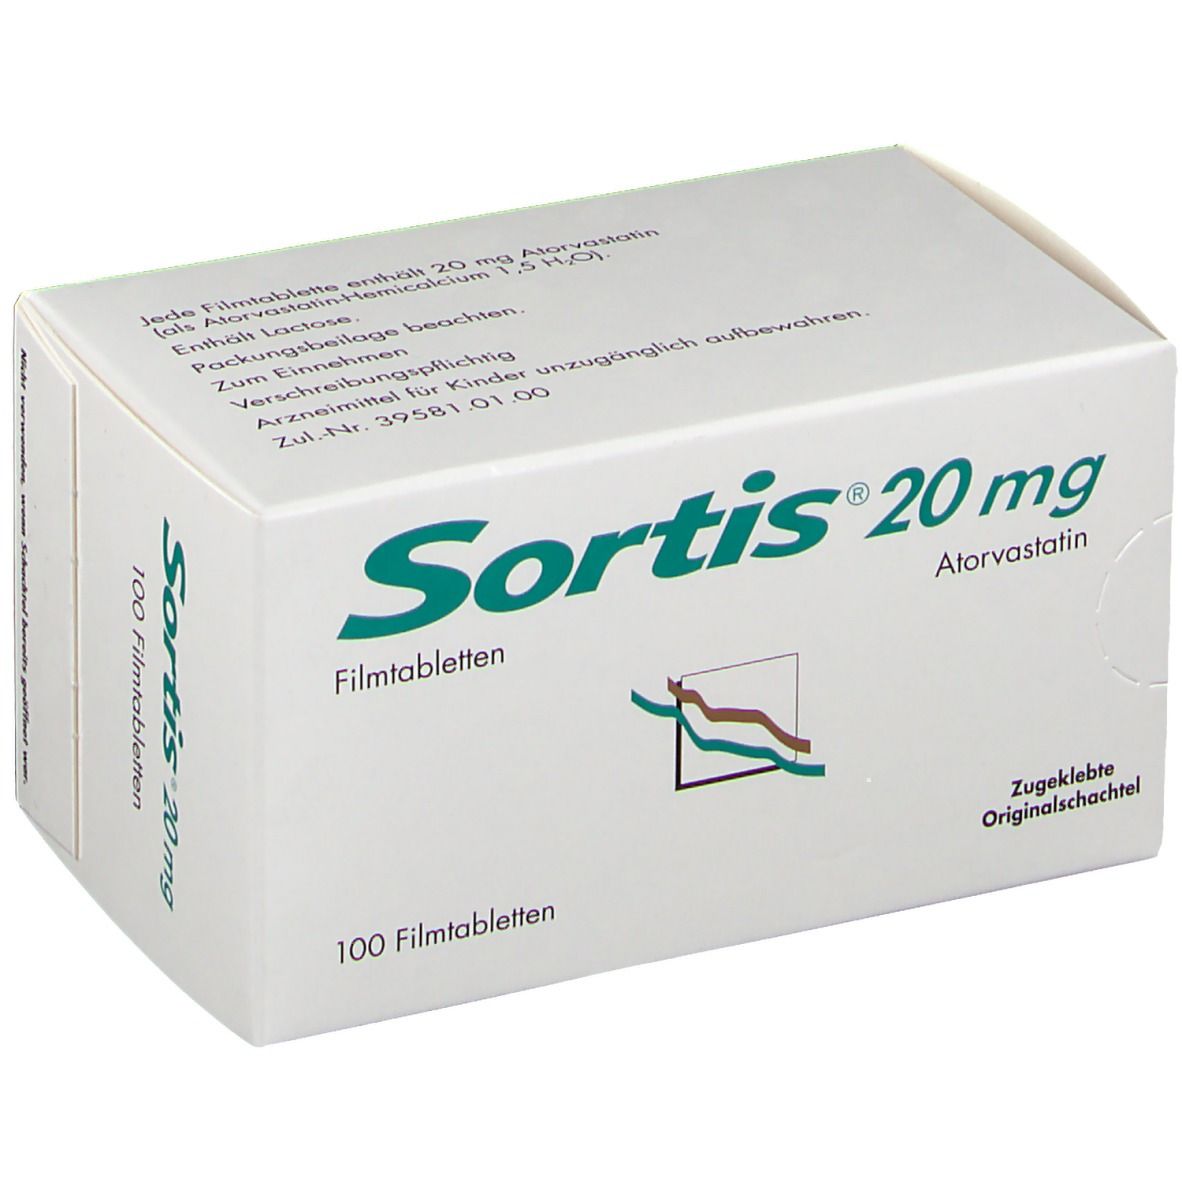 Sortis® 20 mg